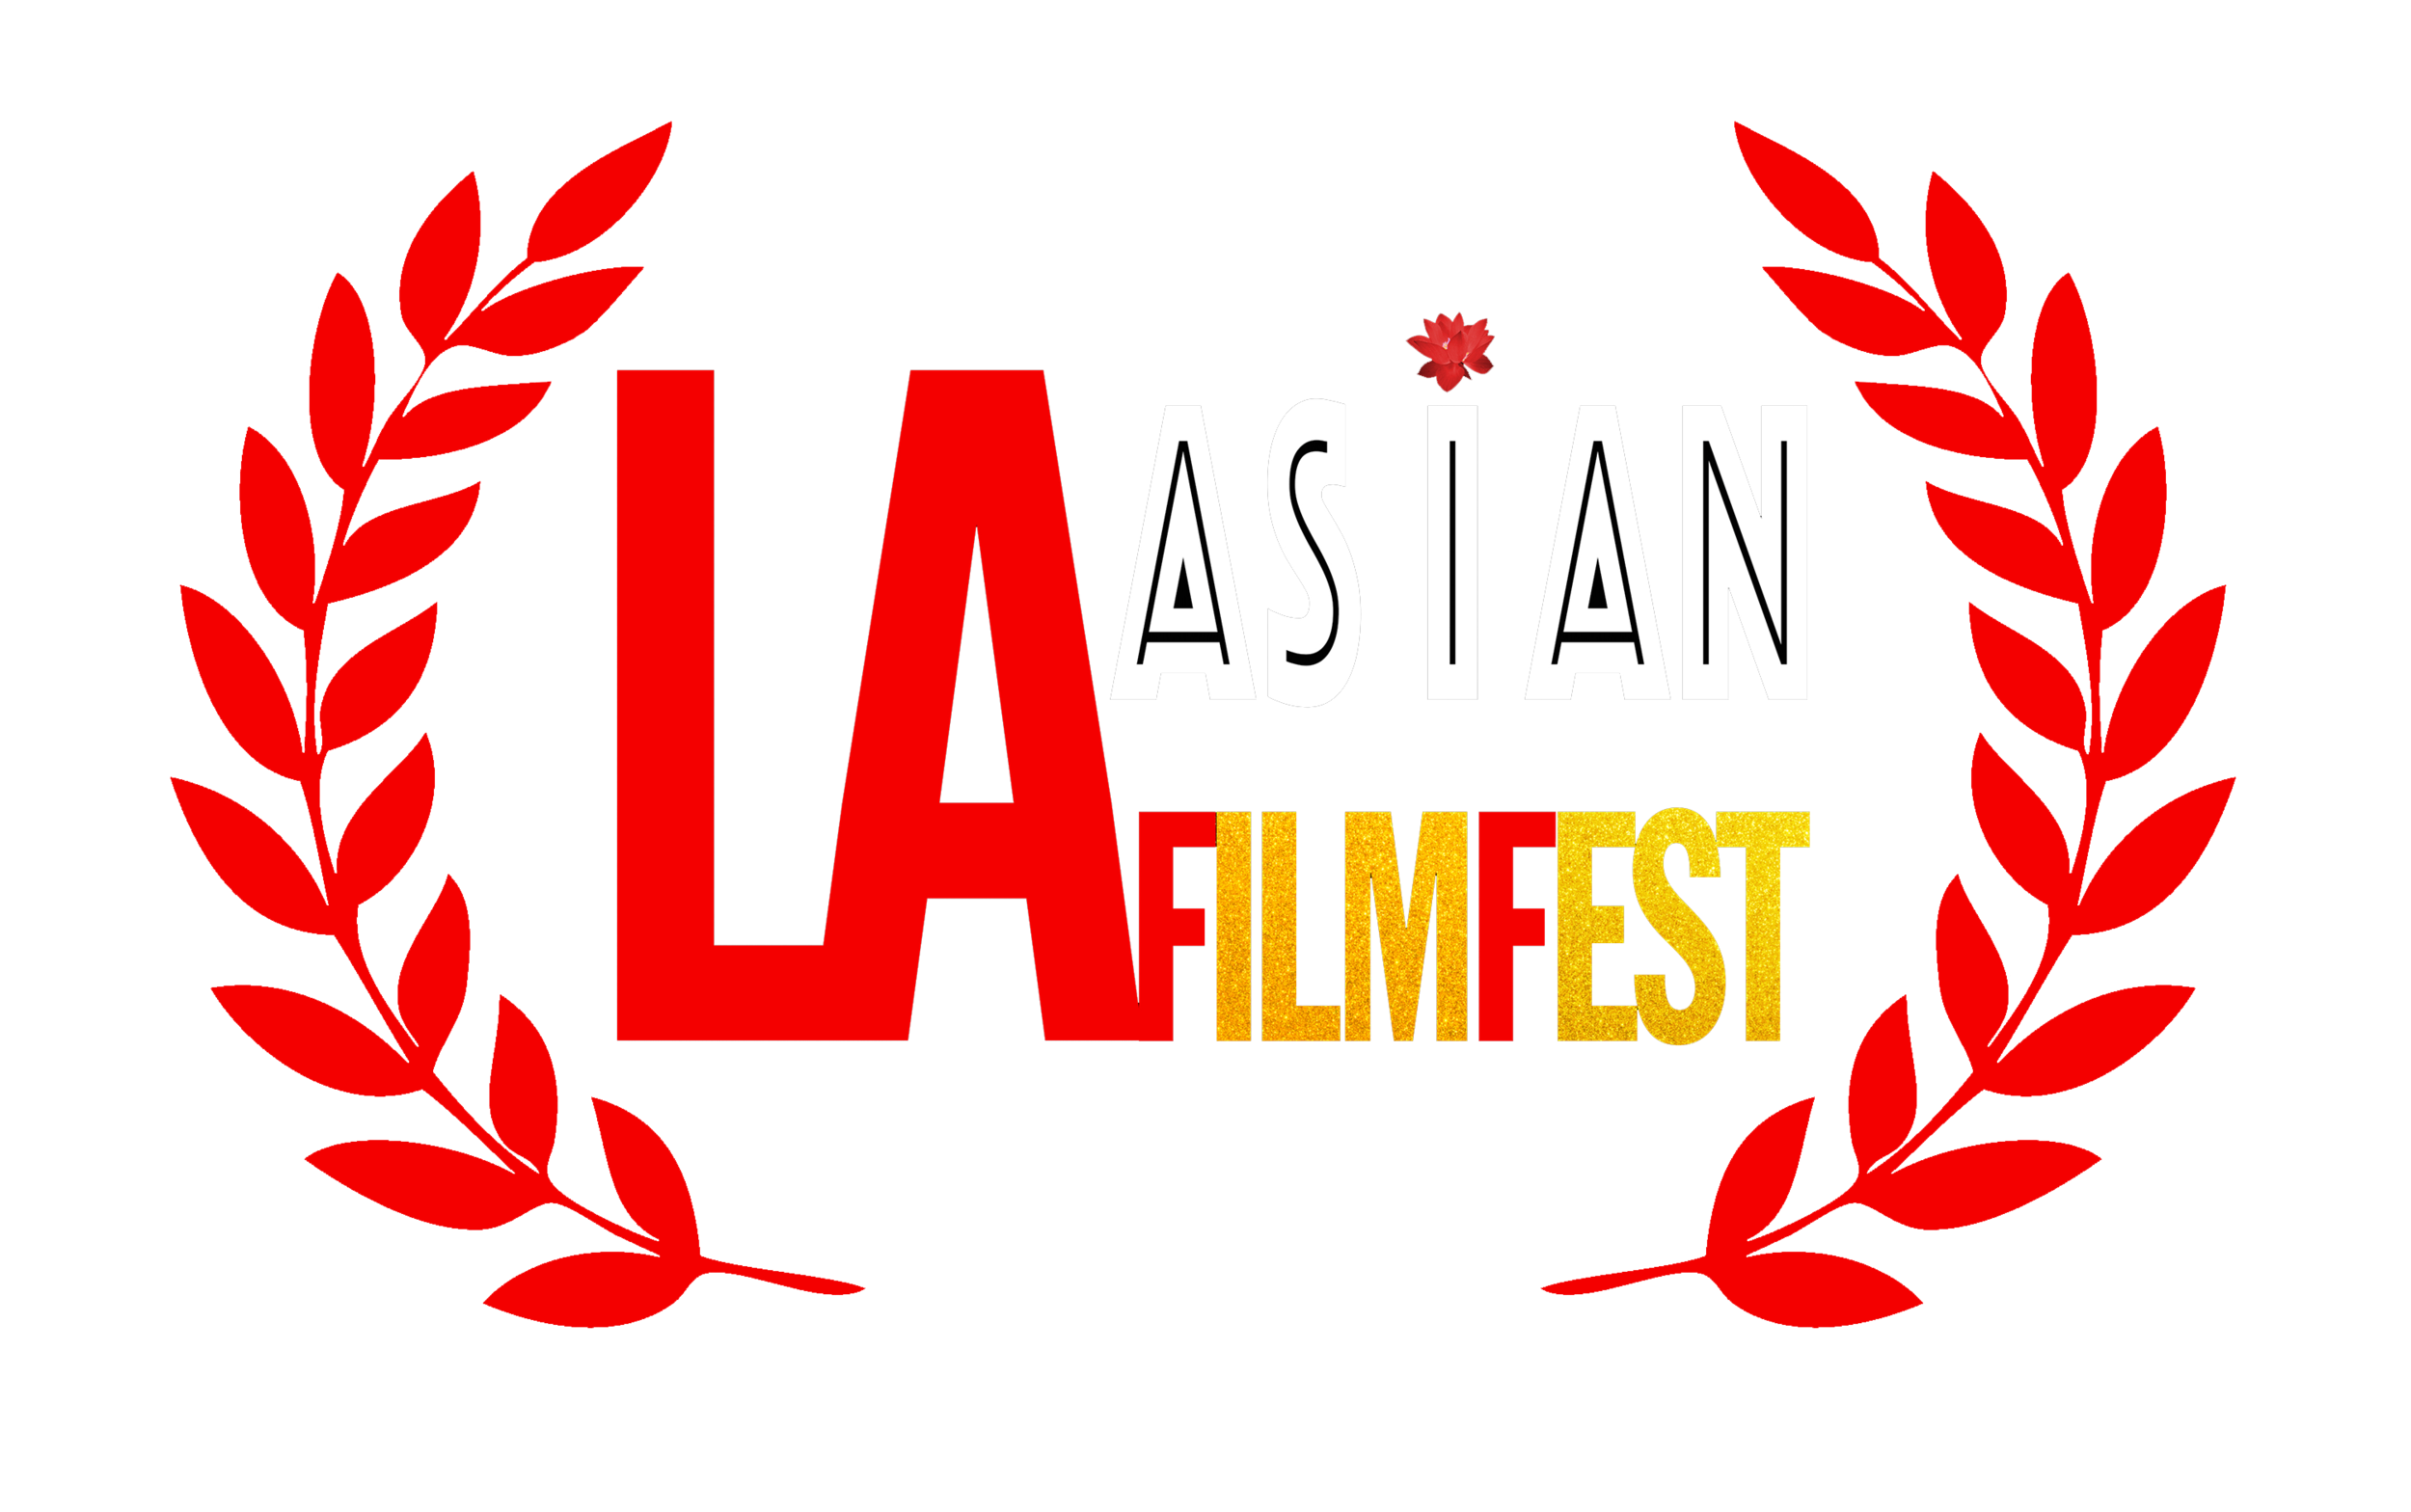 LA-Asian-FilmFest-Laurel-RedTransparent-OfficialSelection.png